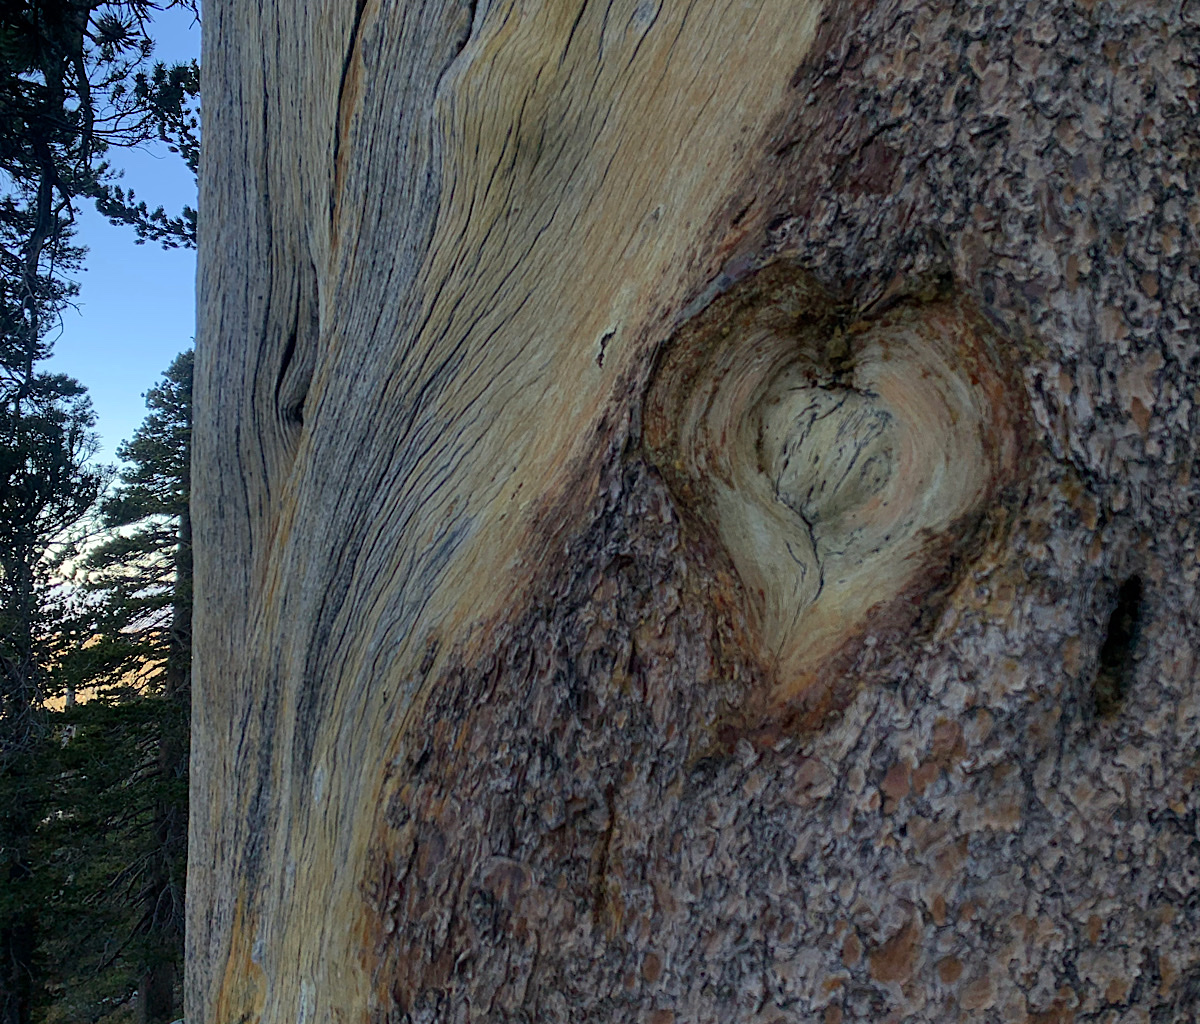 Limber pine heart.